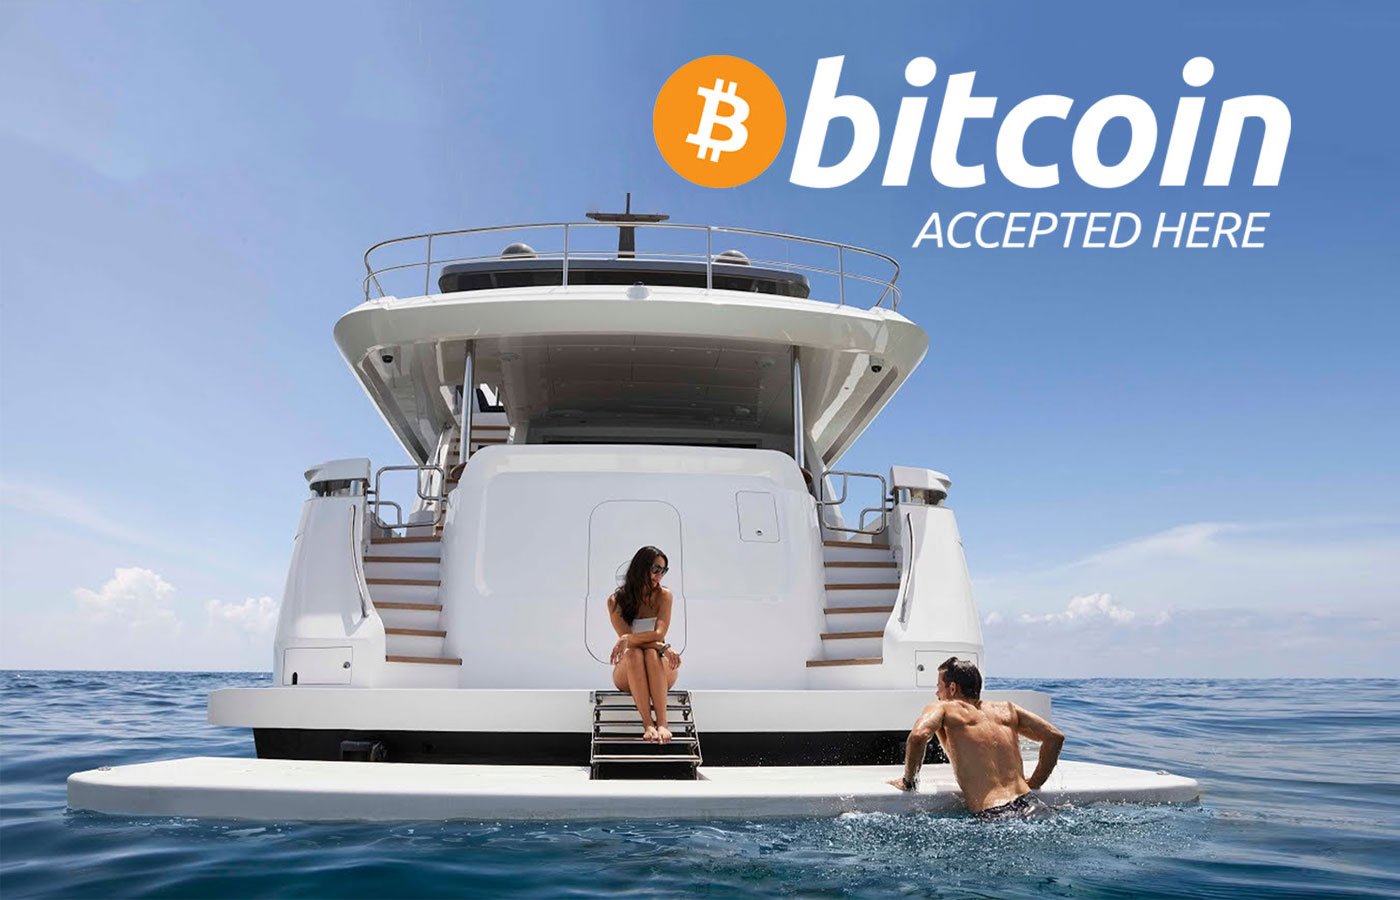 yacht sale bitcoin